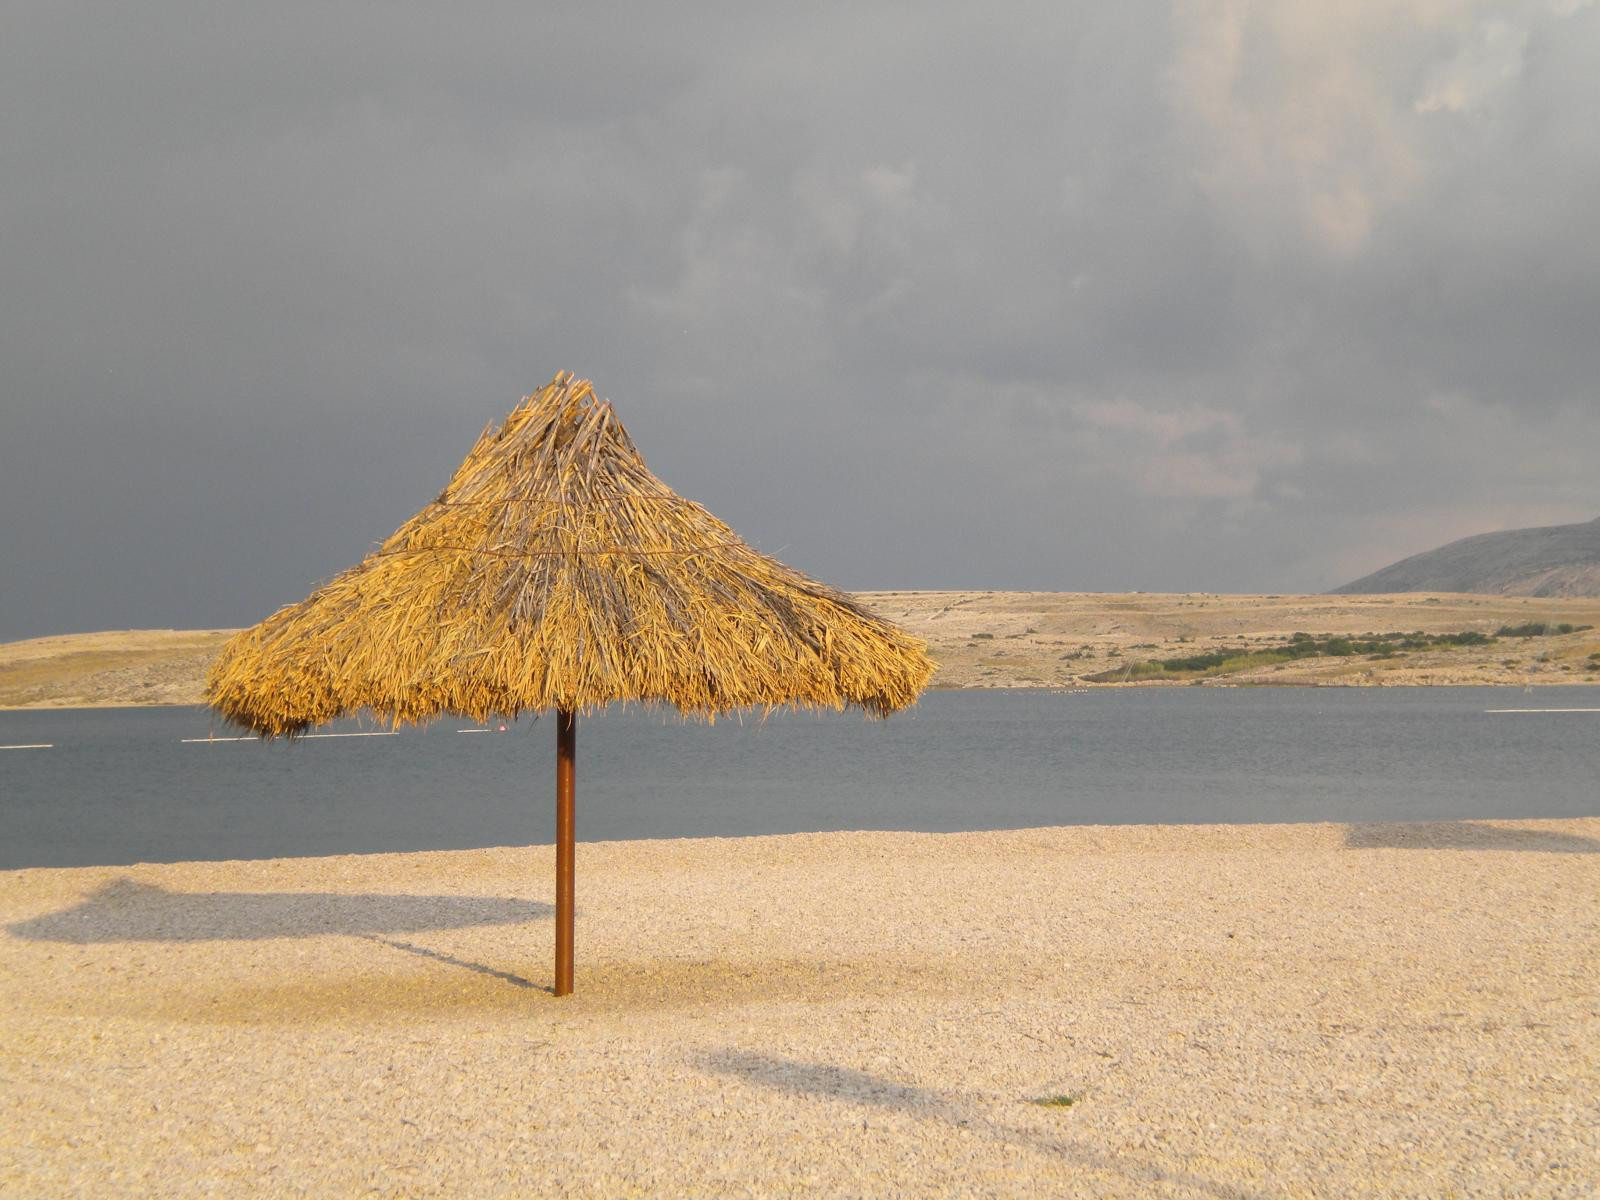 Pláž Zrće leží na ostrove Pag a je rozdelená pre neplavcov, pre deti a invalidov. Je jednou z najkrajších pláží Jadranu, čo si vyslúžila službami a čistotou vody. Je známa ale aj ako tzv. "párty pláž", kvôli svojim nekončiacim večierkom a diskotékam.